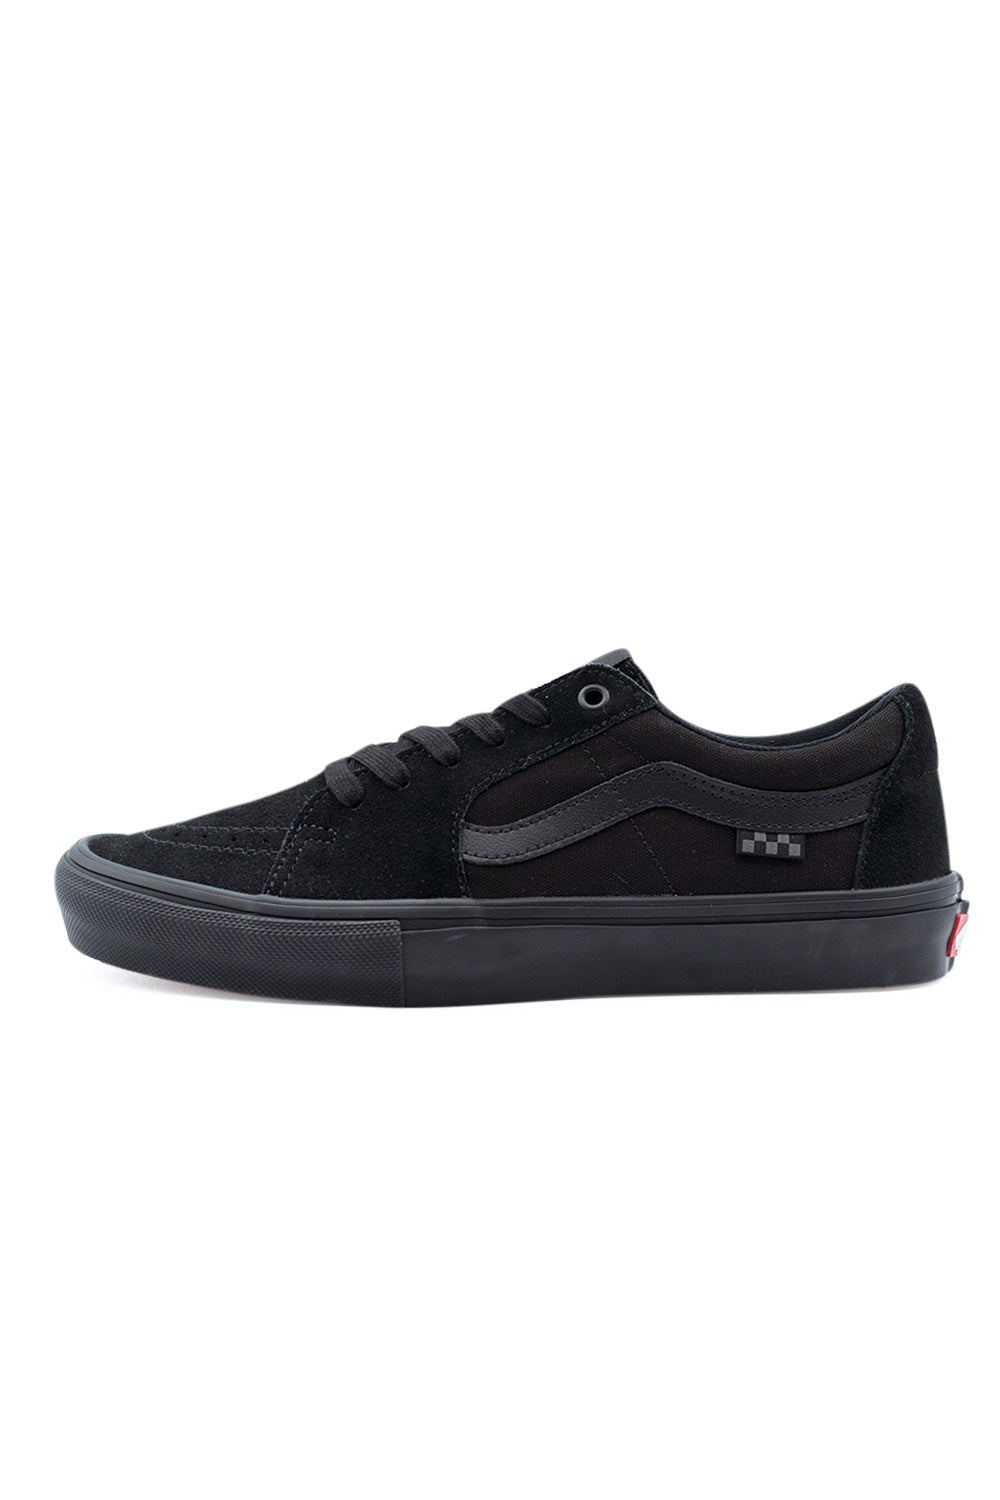 Vans Sk8-Low (Skate) Shoe Black / Black - BONKERS